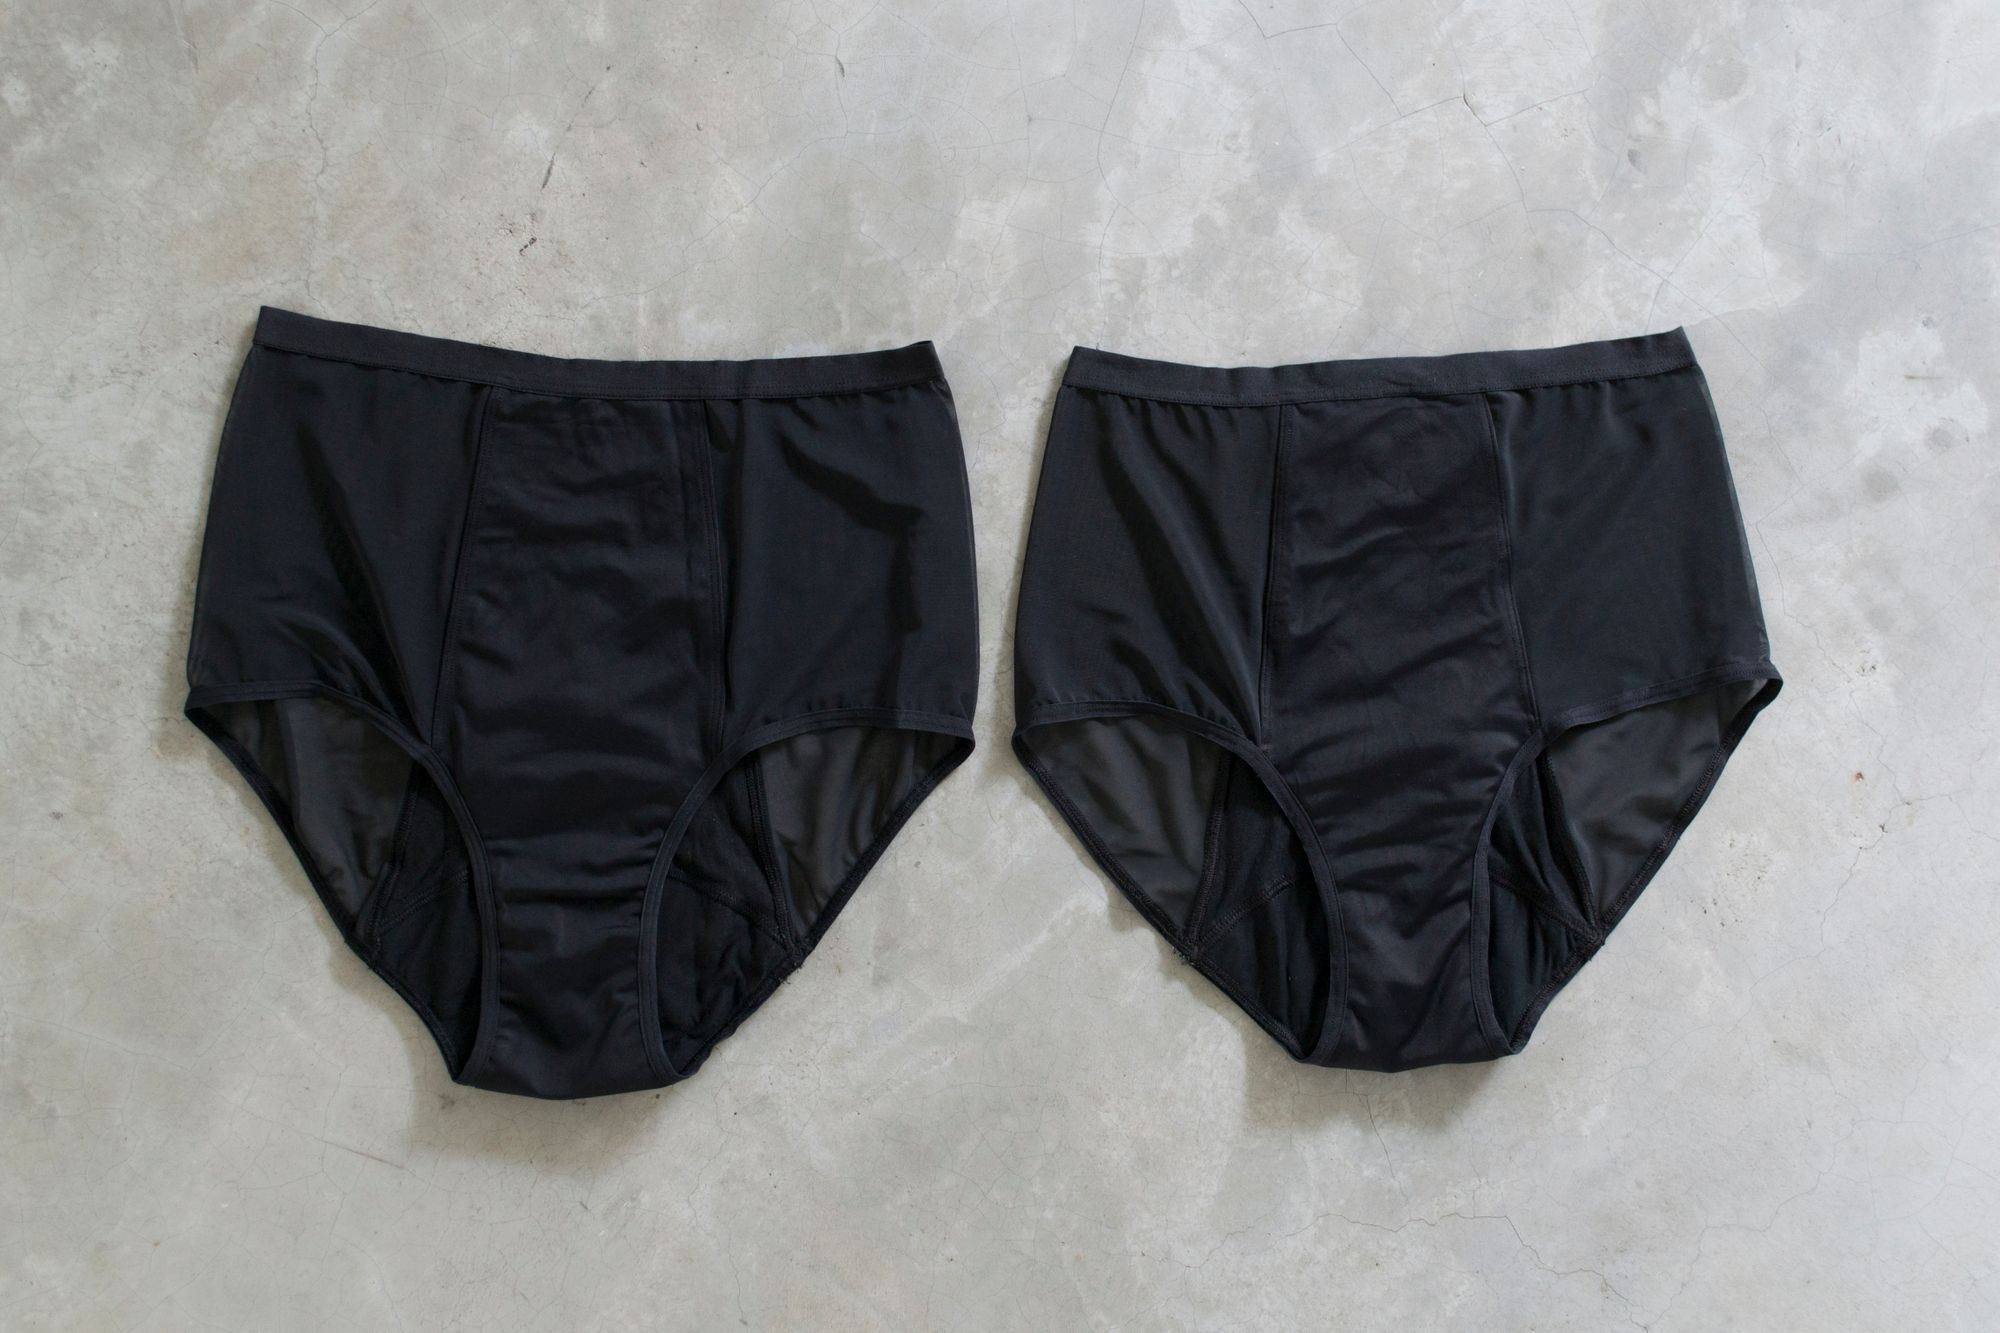 THINX Period Underwear Review